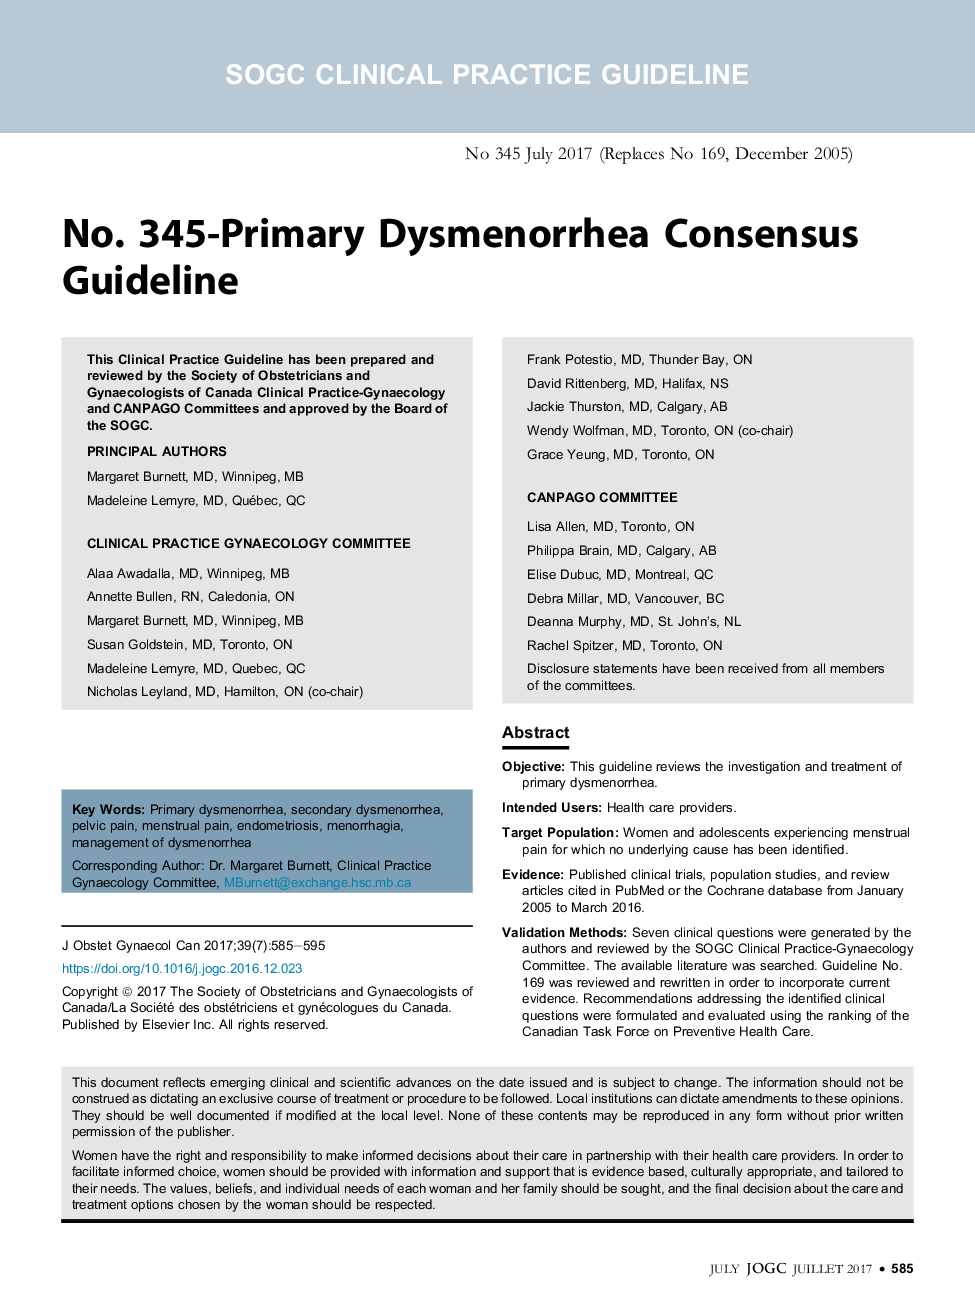 No. 345-Primary Dysmenorrhea Consensus Guideline